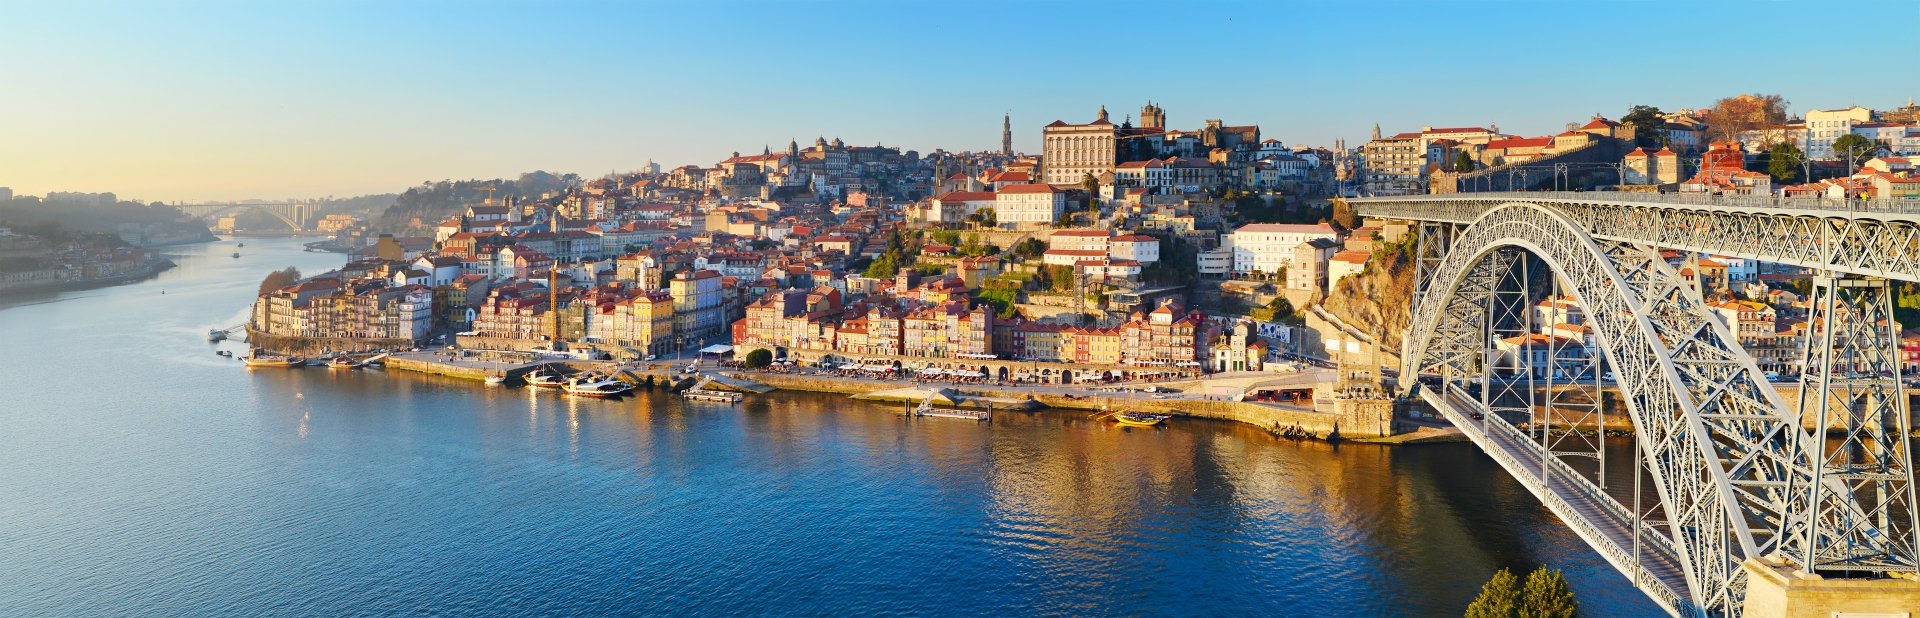 Cidade do Porto sediará Congresso da UITIC